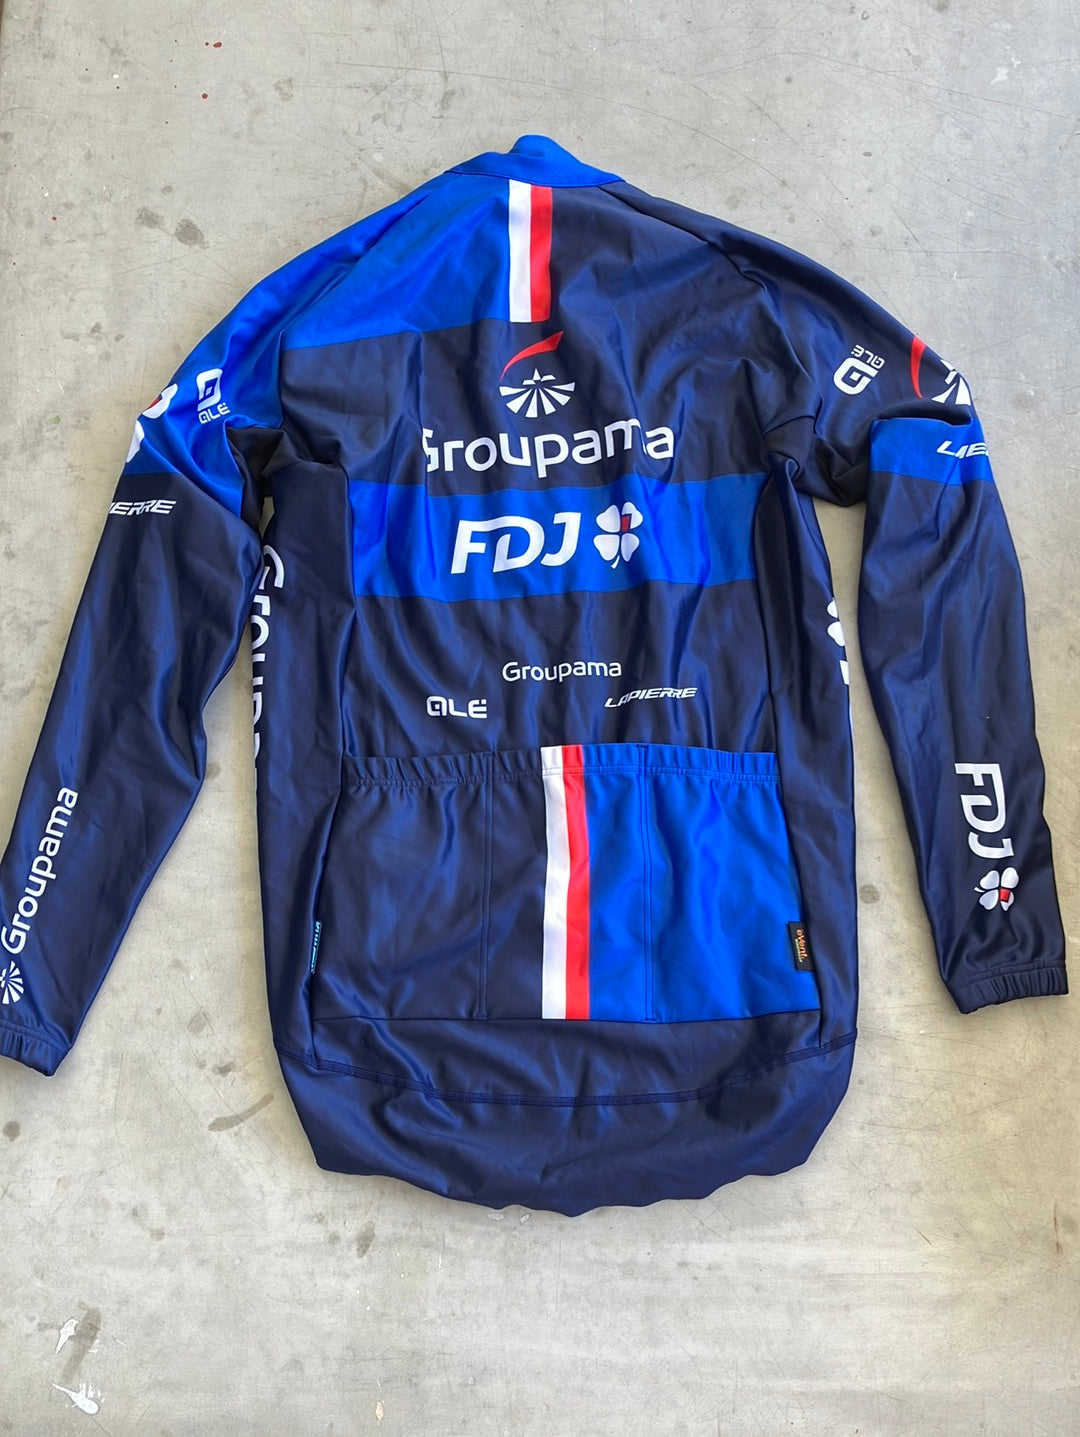 Long Sleeve Gabba Jersey / Winter Cycling Jacket | Ale | Groupama Française des Jeux FDJ | Pro Cycling Kit